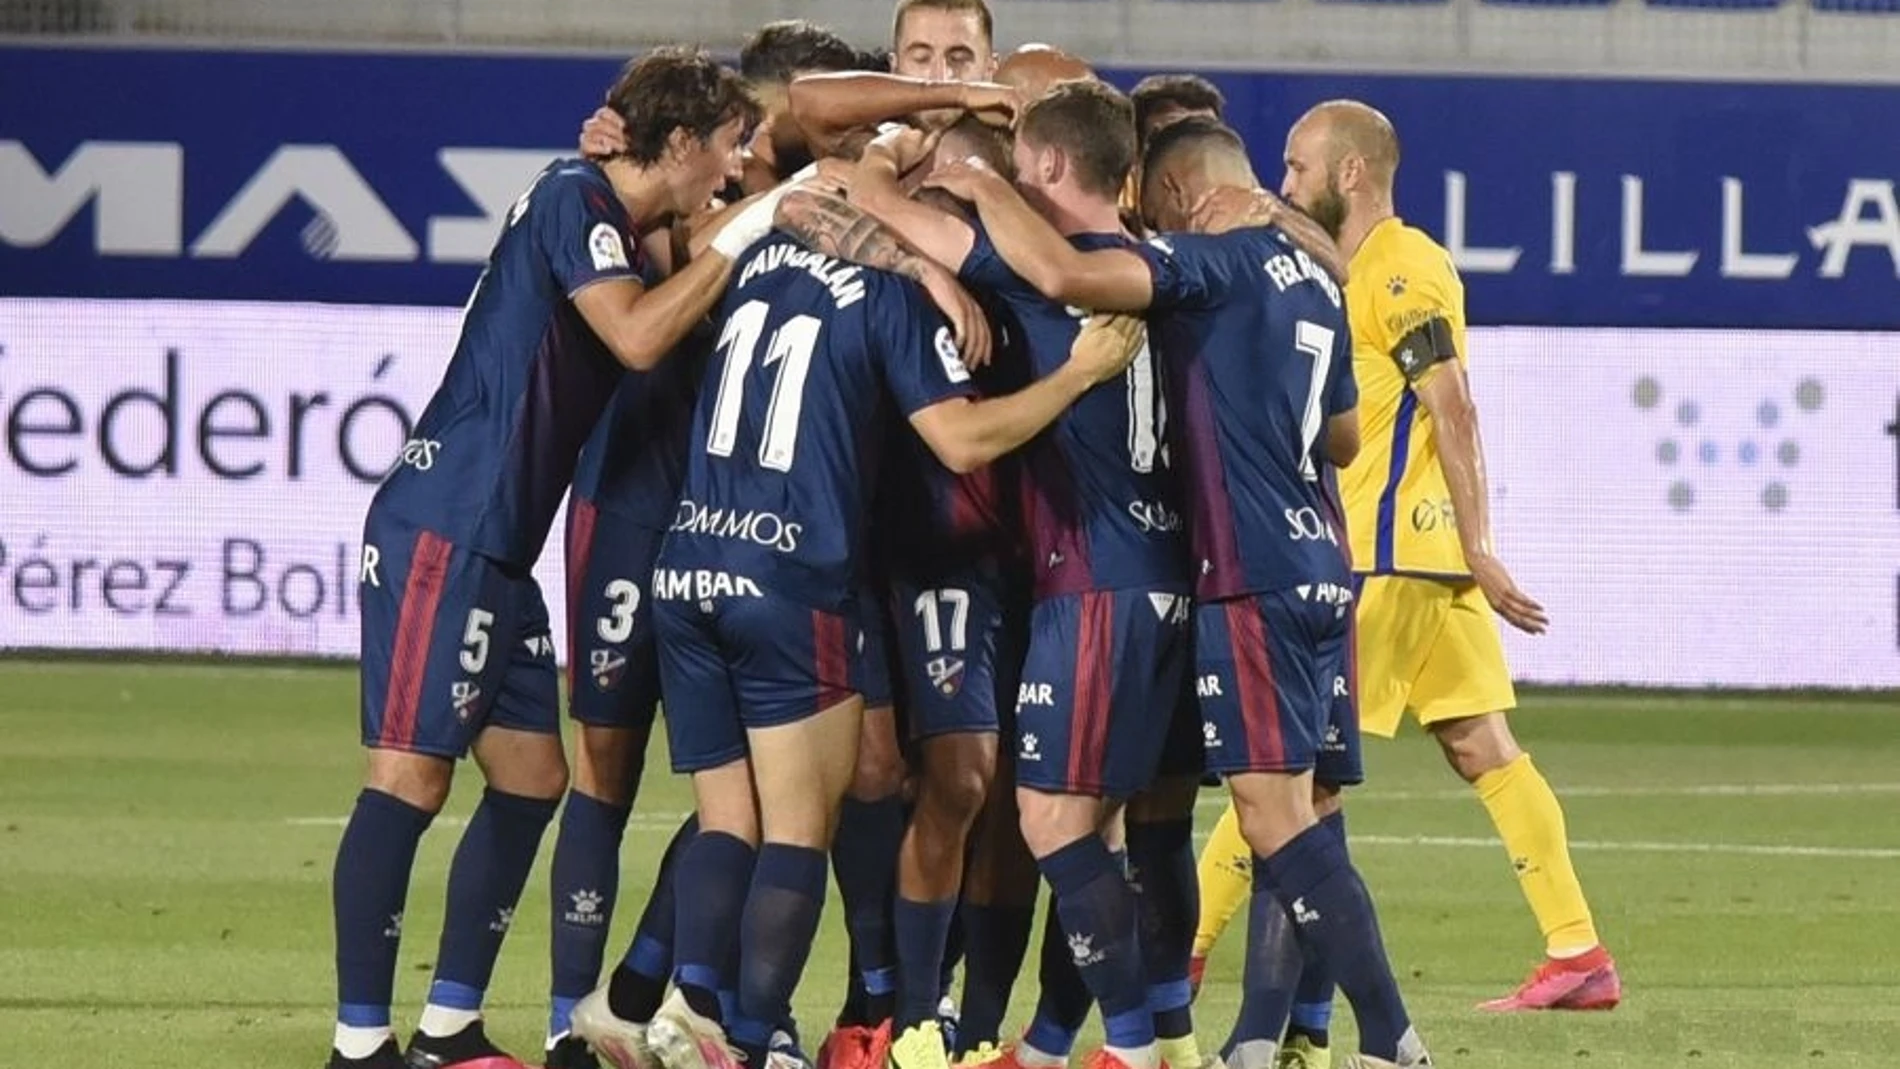 Fútbol/Segunda.- (Crónica) El Huesca se repone en casa para seguir en puestos de ascenso directo